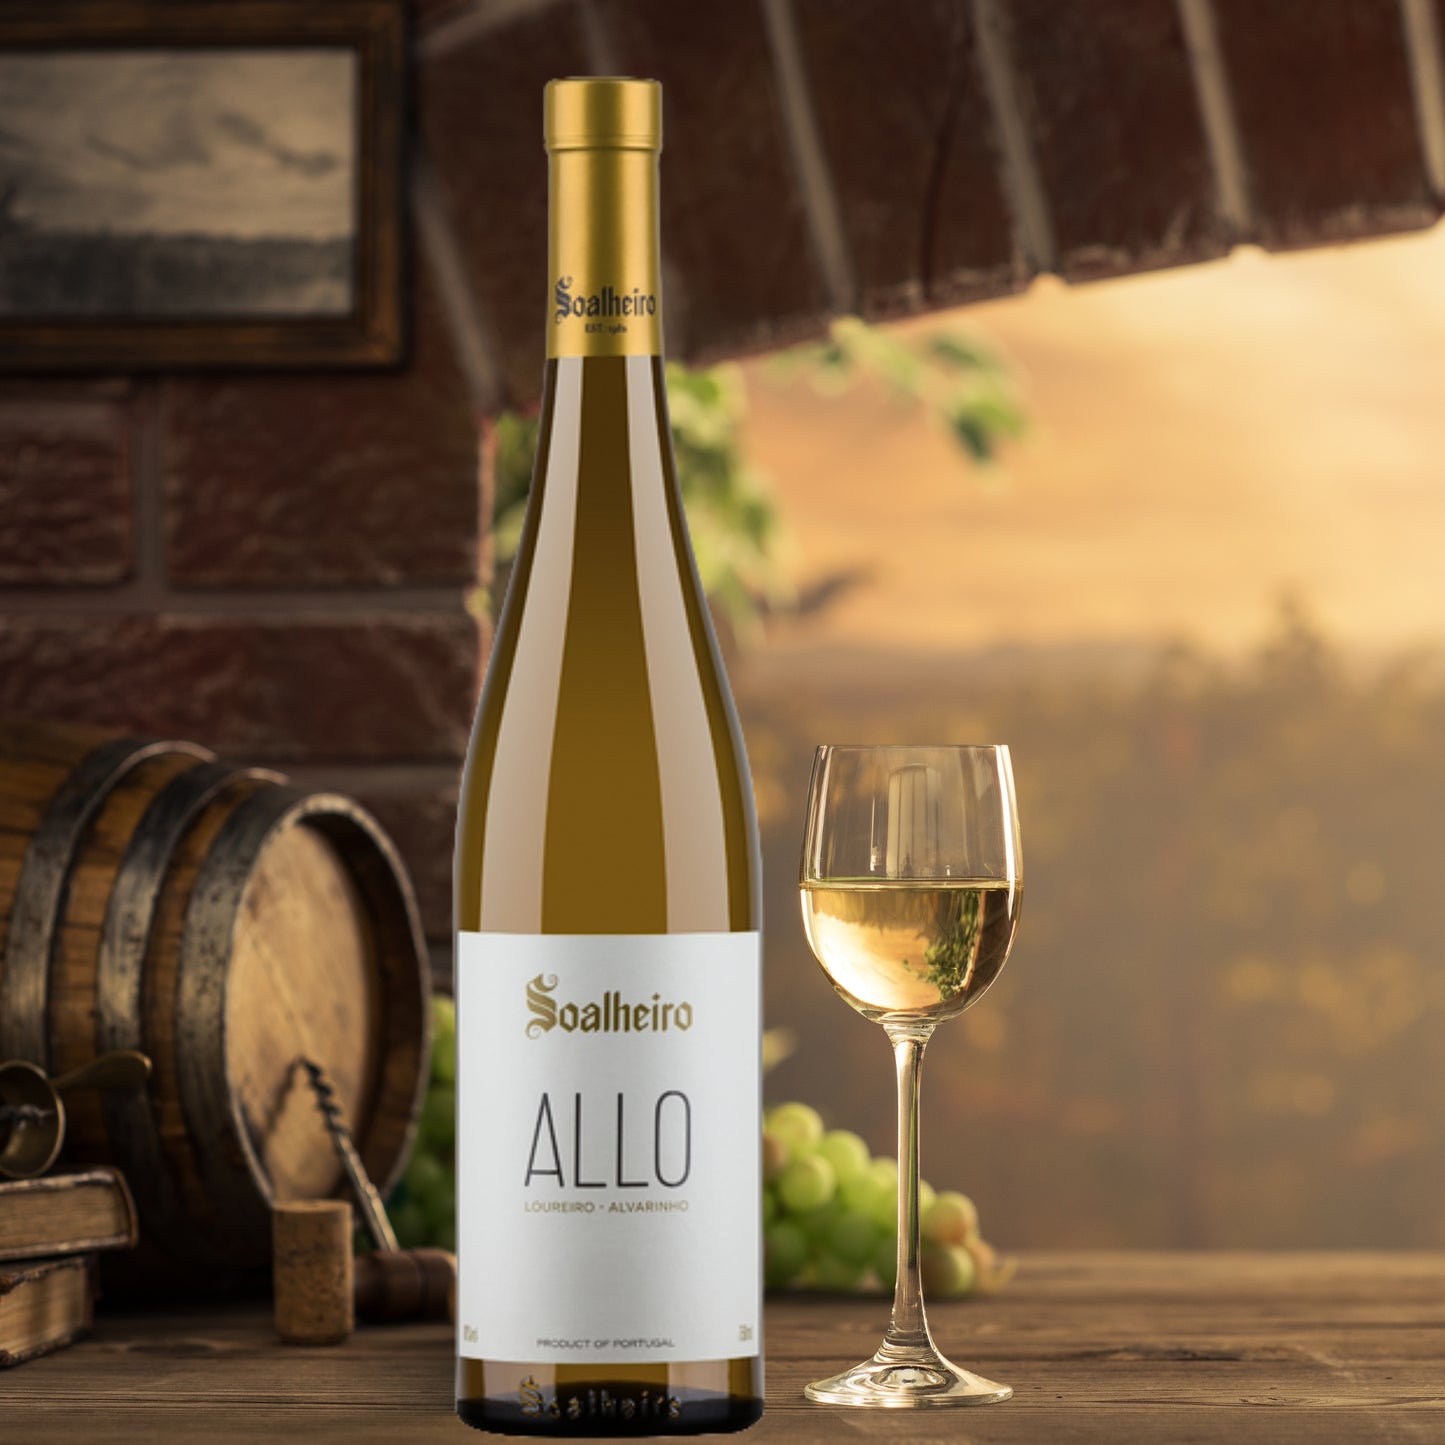 
                  
                    Soalheiro Allo, Vinho Verde vom Weingut Soalheiro aus der Region Minho / Portugal. Bild mit Weinflasche und Weißweinglas neben einem Holz-Weinfass, einem Weinkorkenzieher und Weintrauben.
                  
                